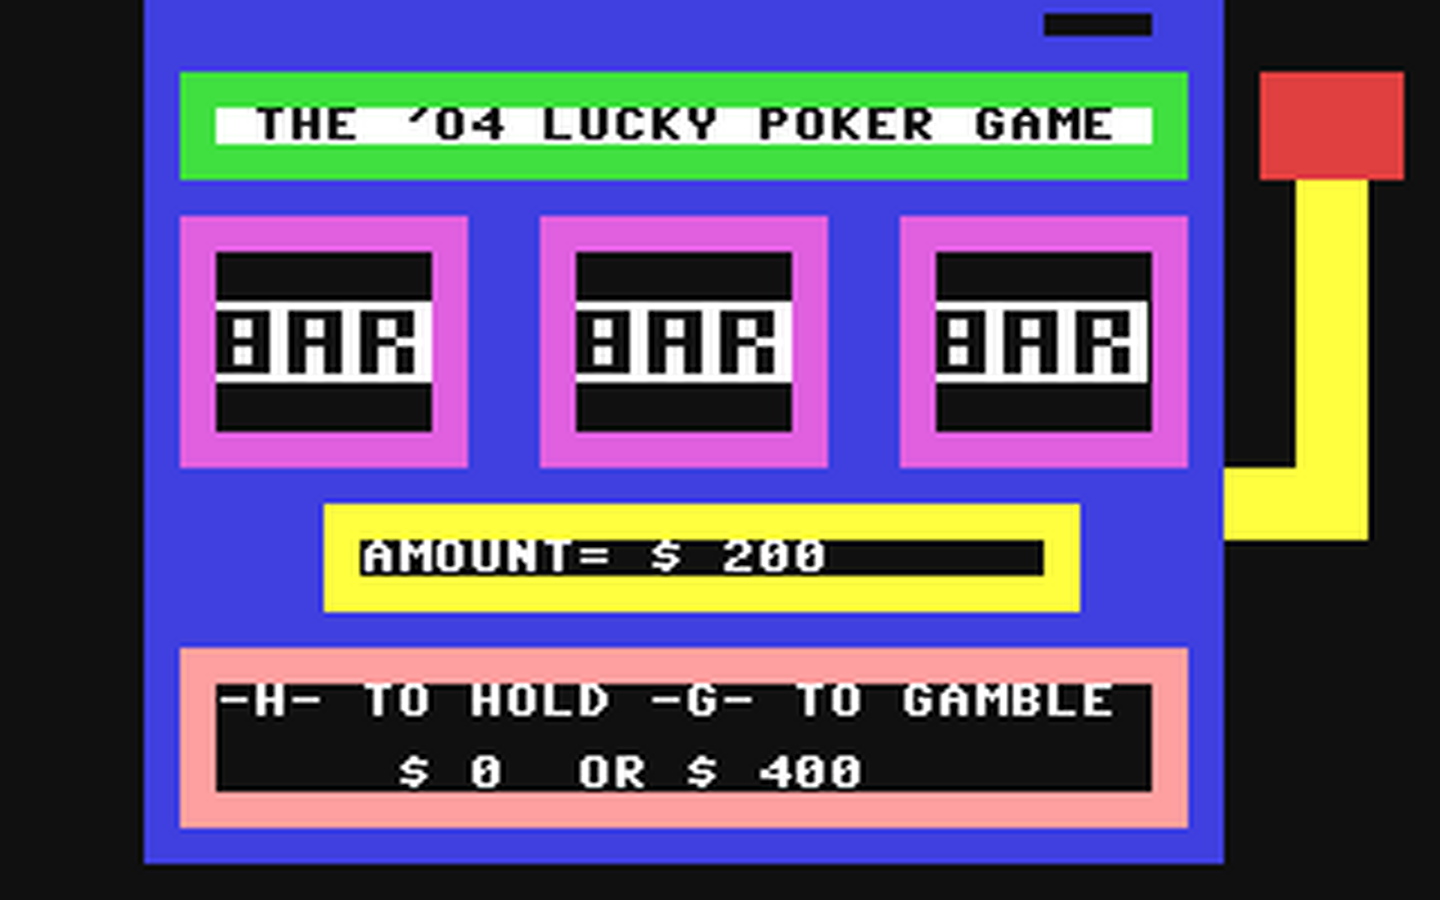 C64 GameBase '04_Lucky_Poker_Game,_The (Public_Domain) 2004